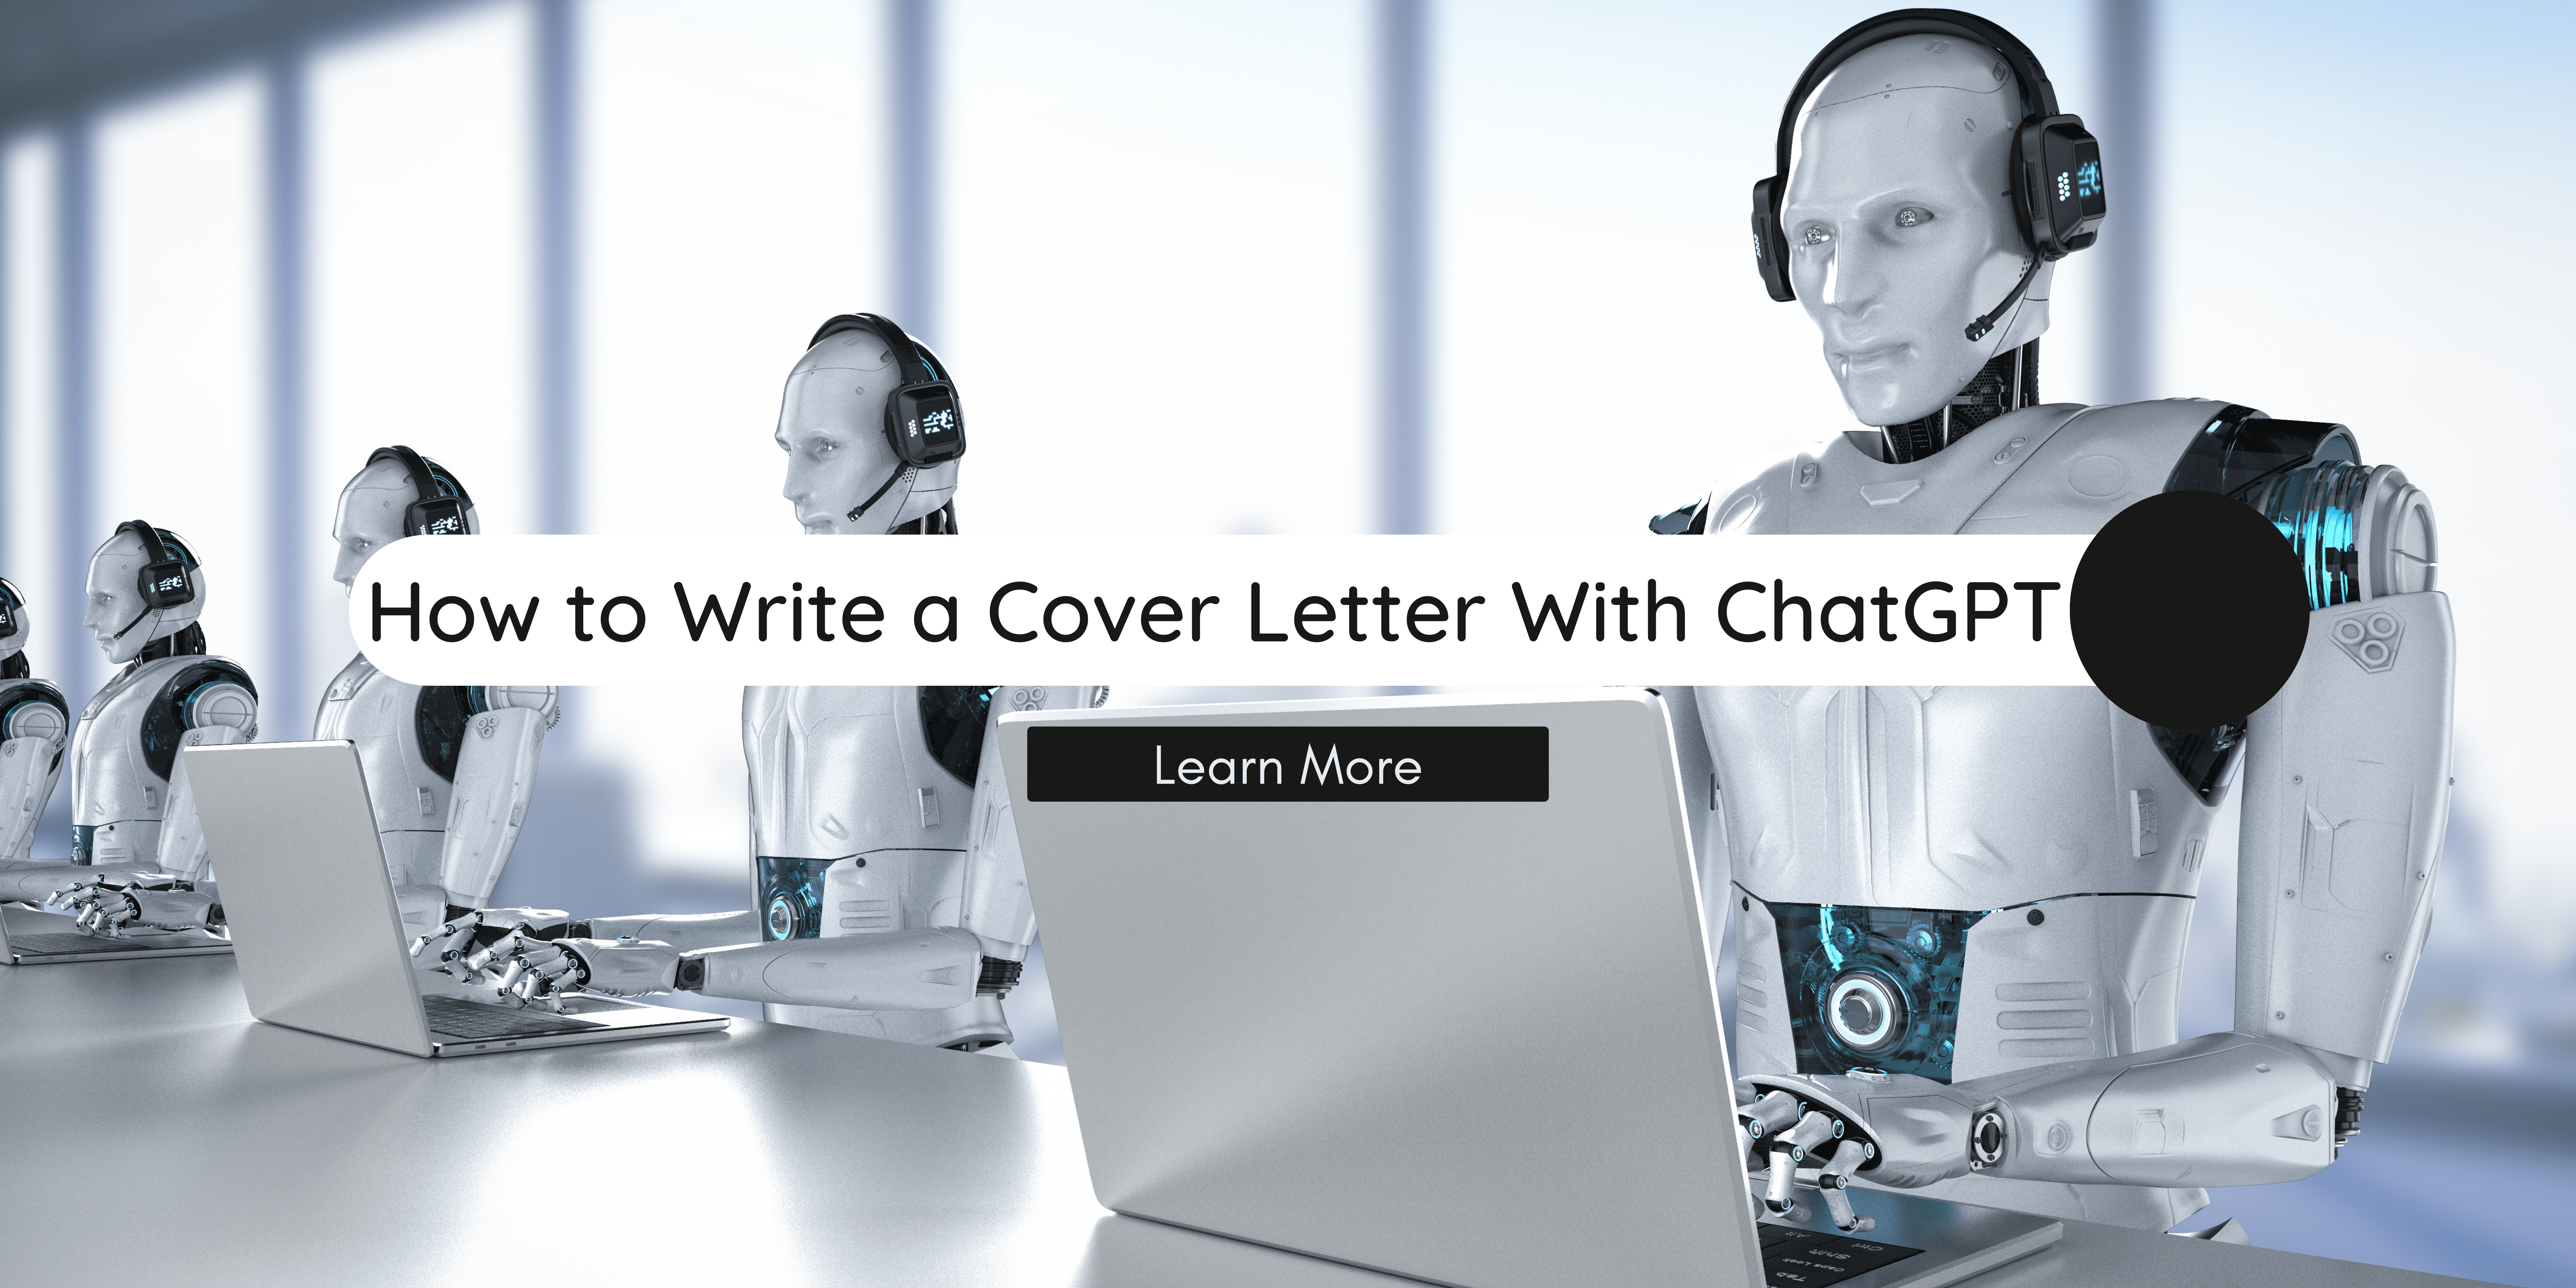 Anschreiben schreiben mit ChatGPT